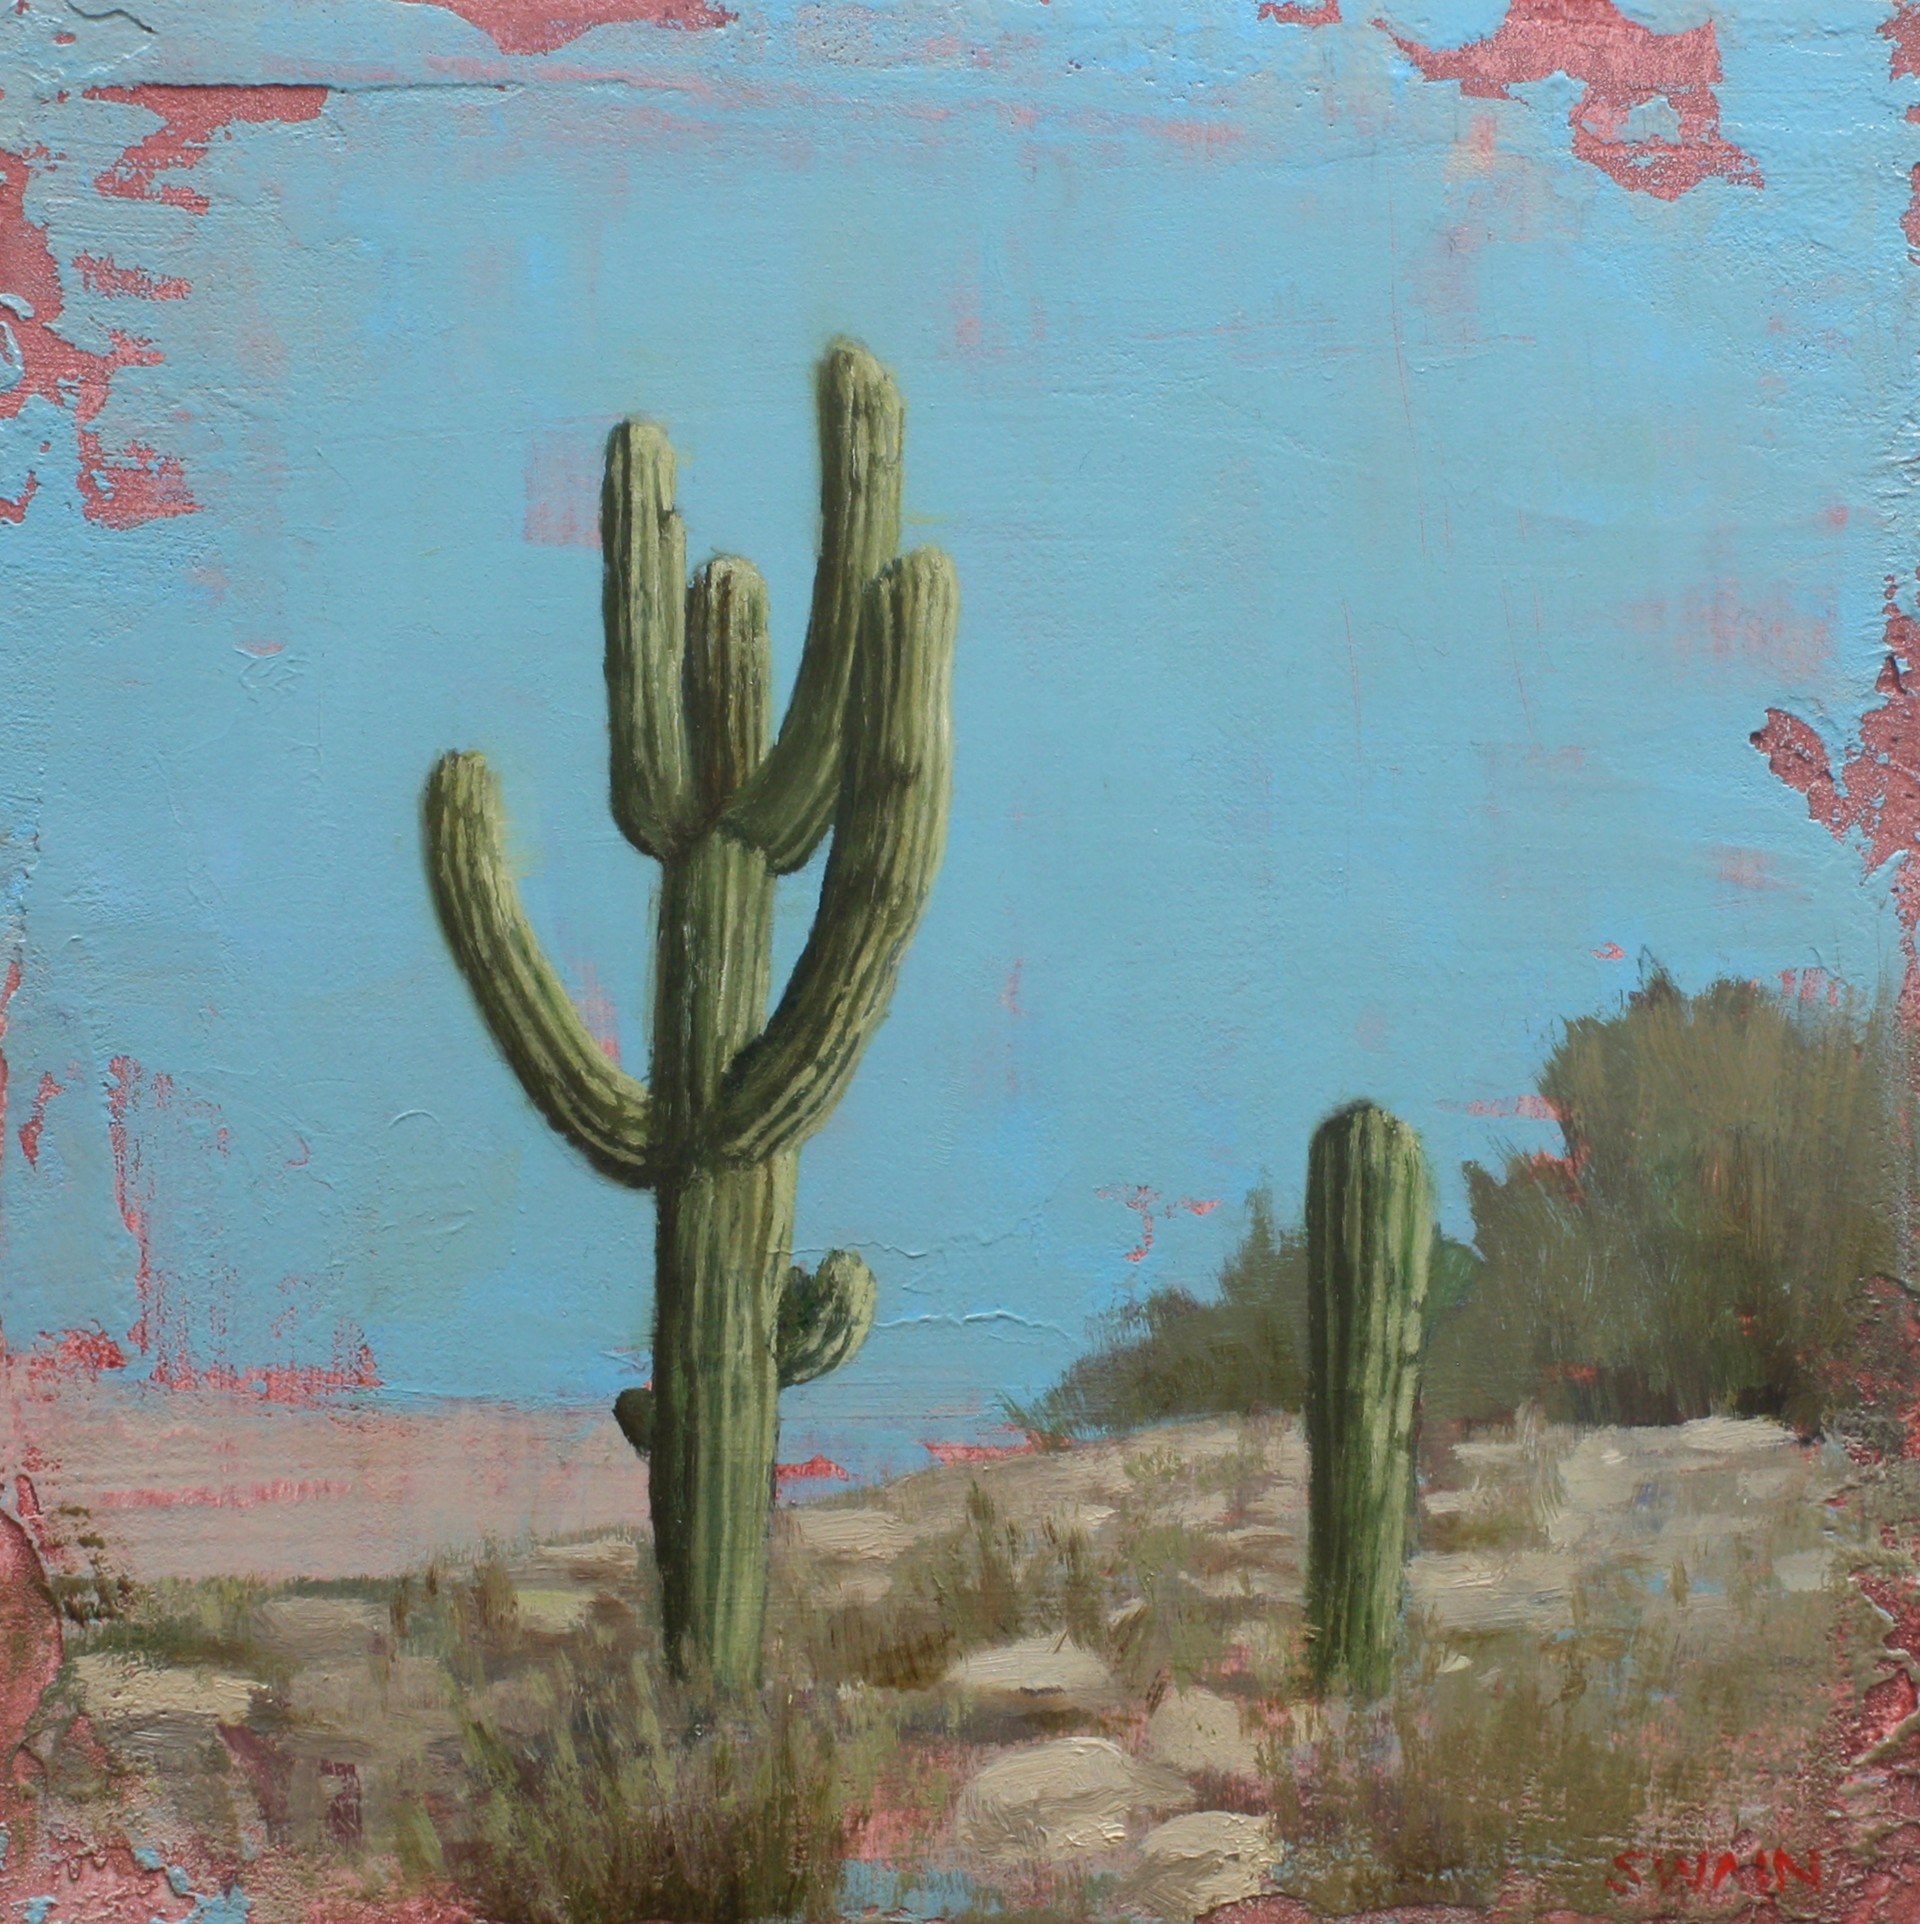 Desert Gentleman by Tyler Swain